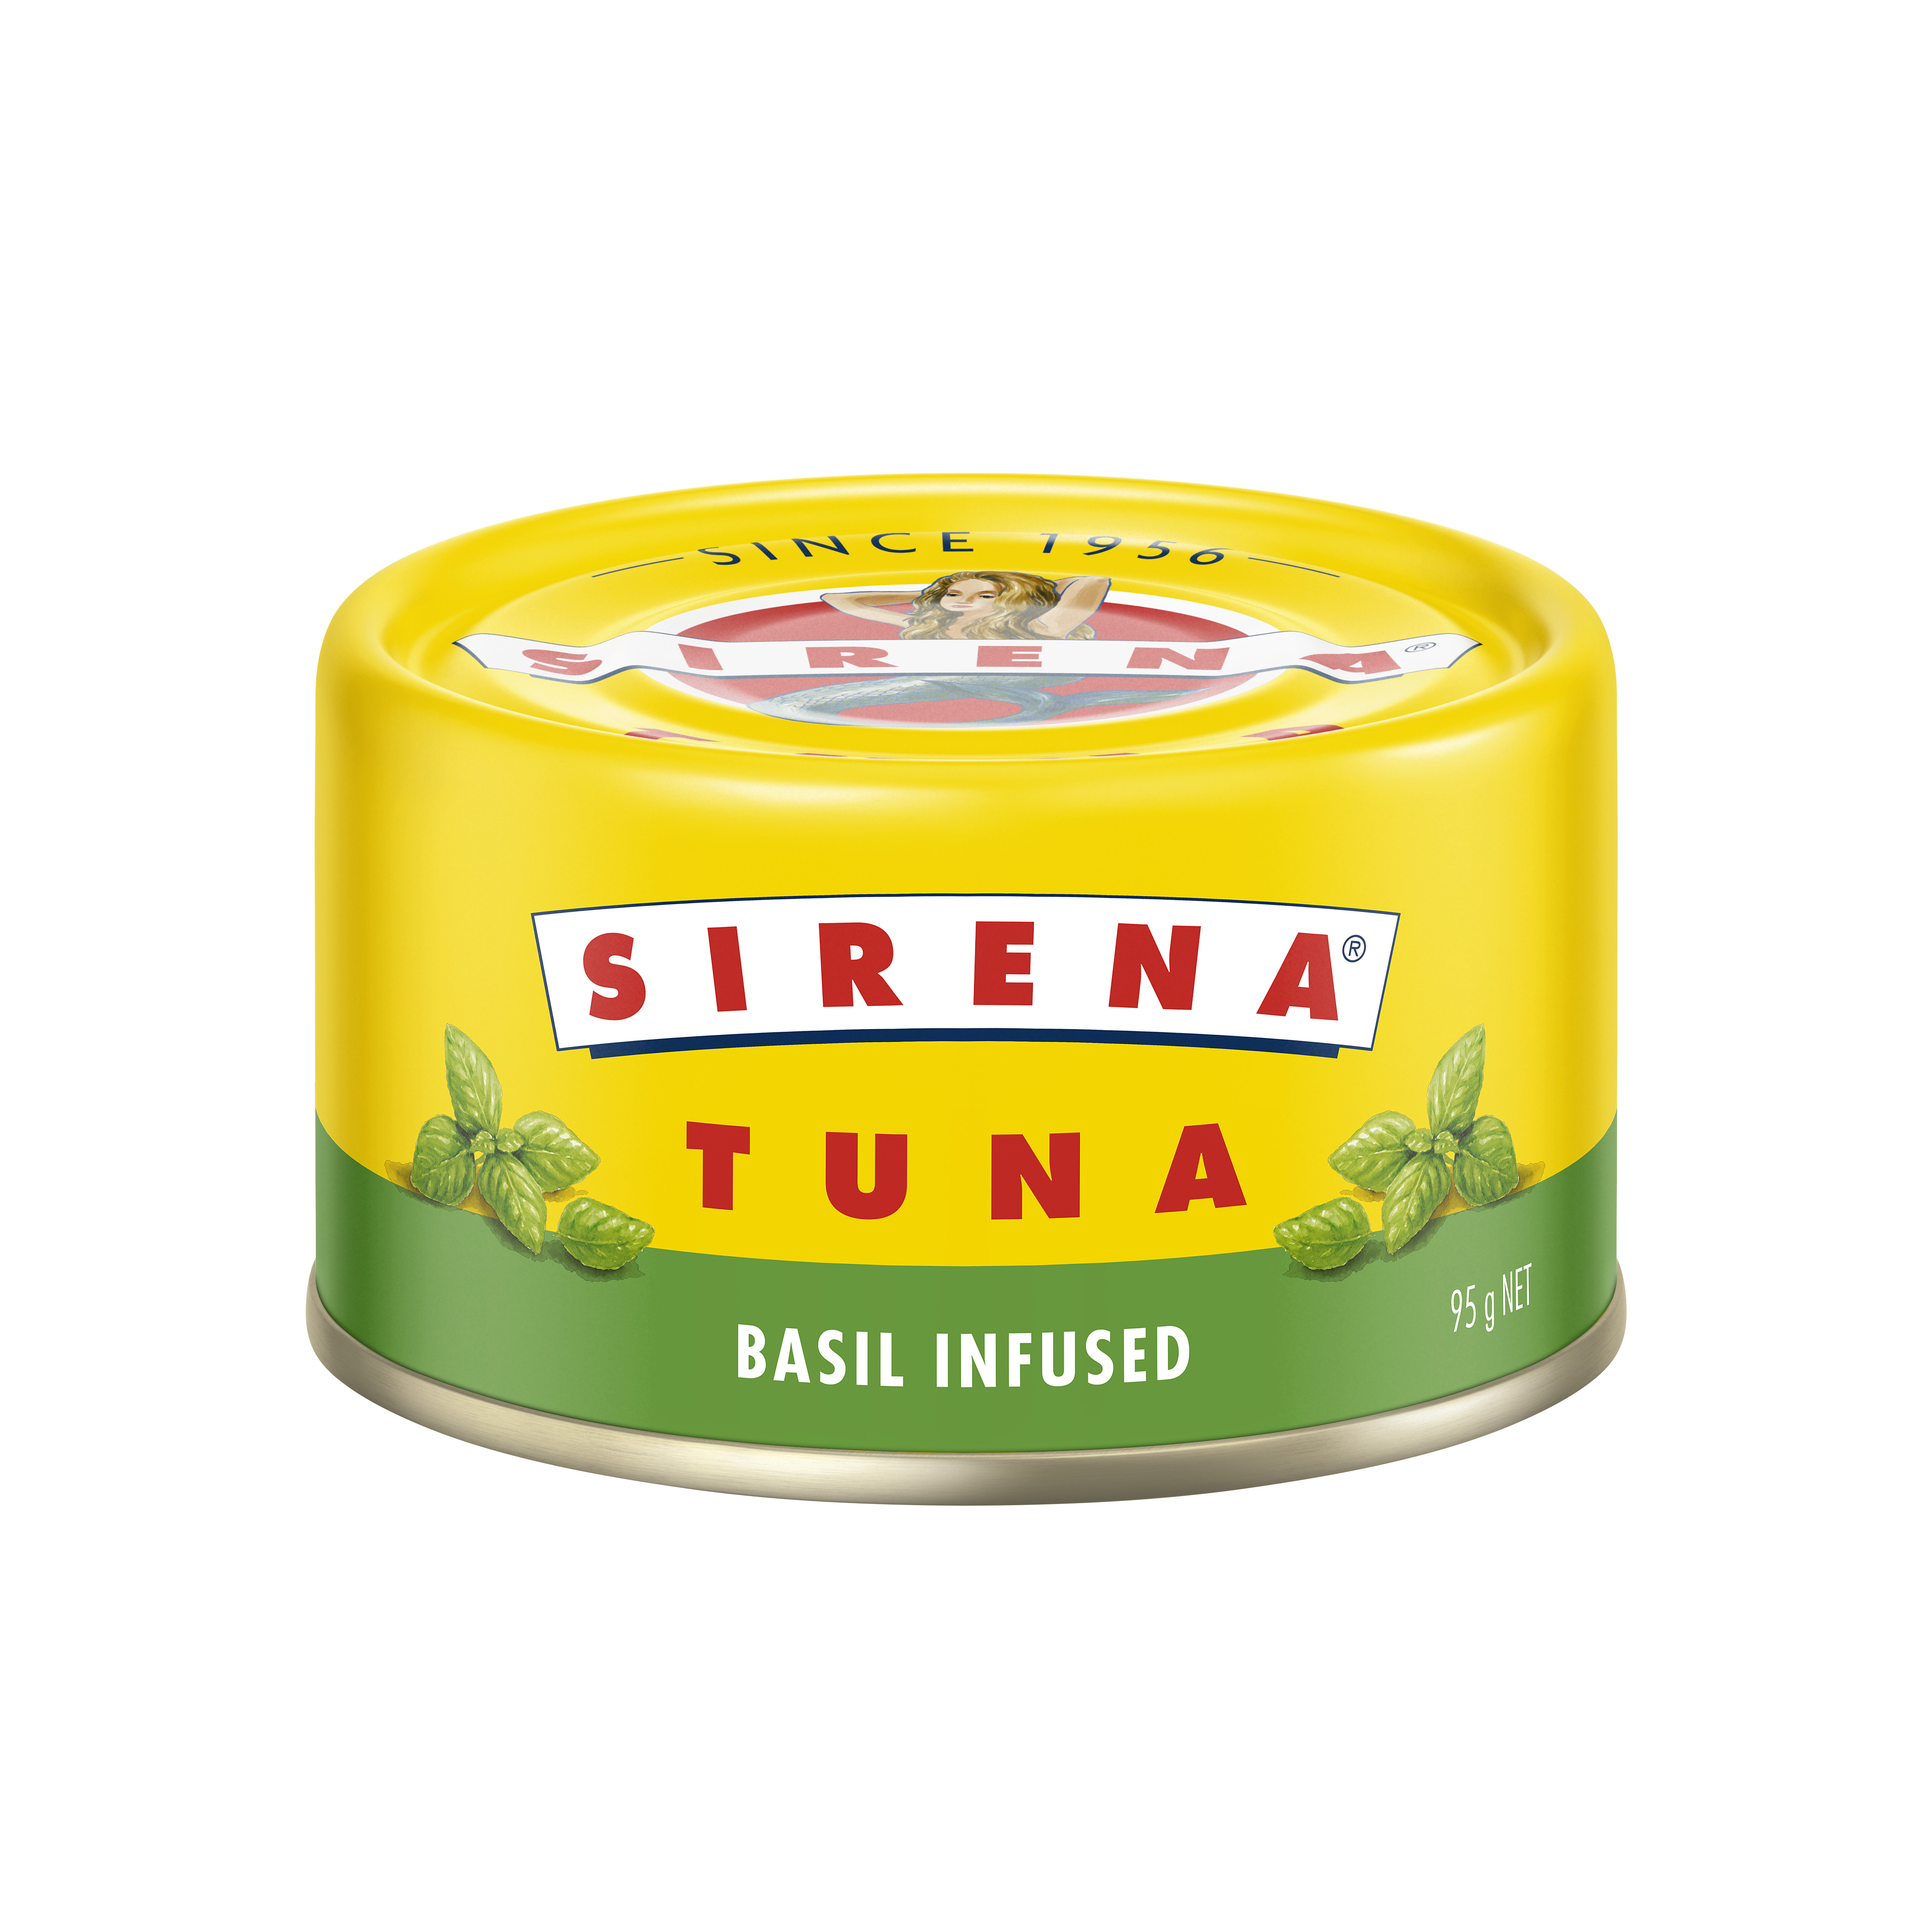 Sirena Tuna Basil Infused Can Image